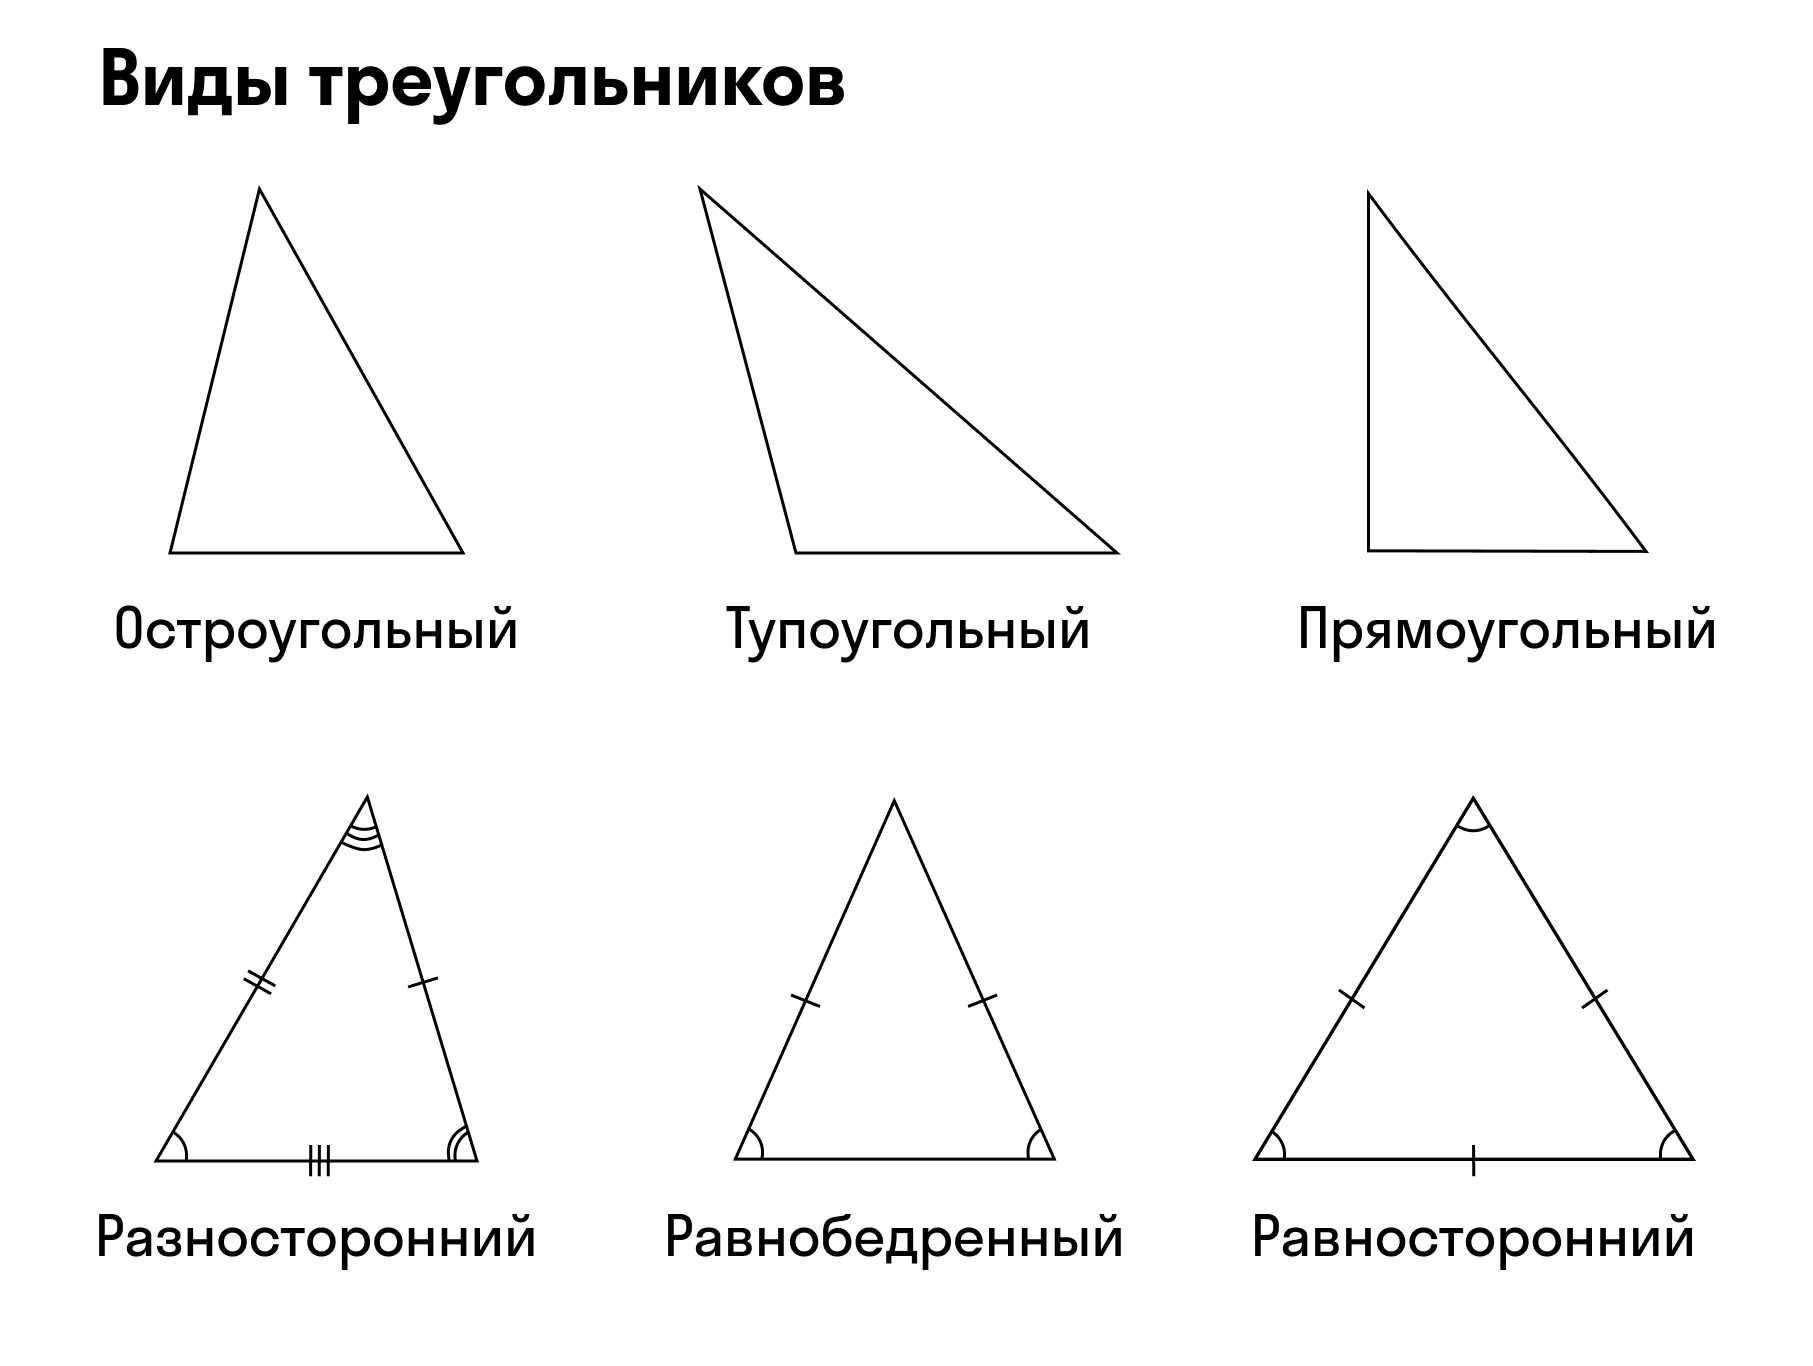 Построй прямоугольный и тупоугольный треугольник. Равнобедренный равносторонний и прямоугольный треугольник. Остроугольный прямоугольный и тупоугольный треугольники. Острый треугольник. Треугольники виды треугольников.